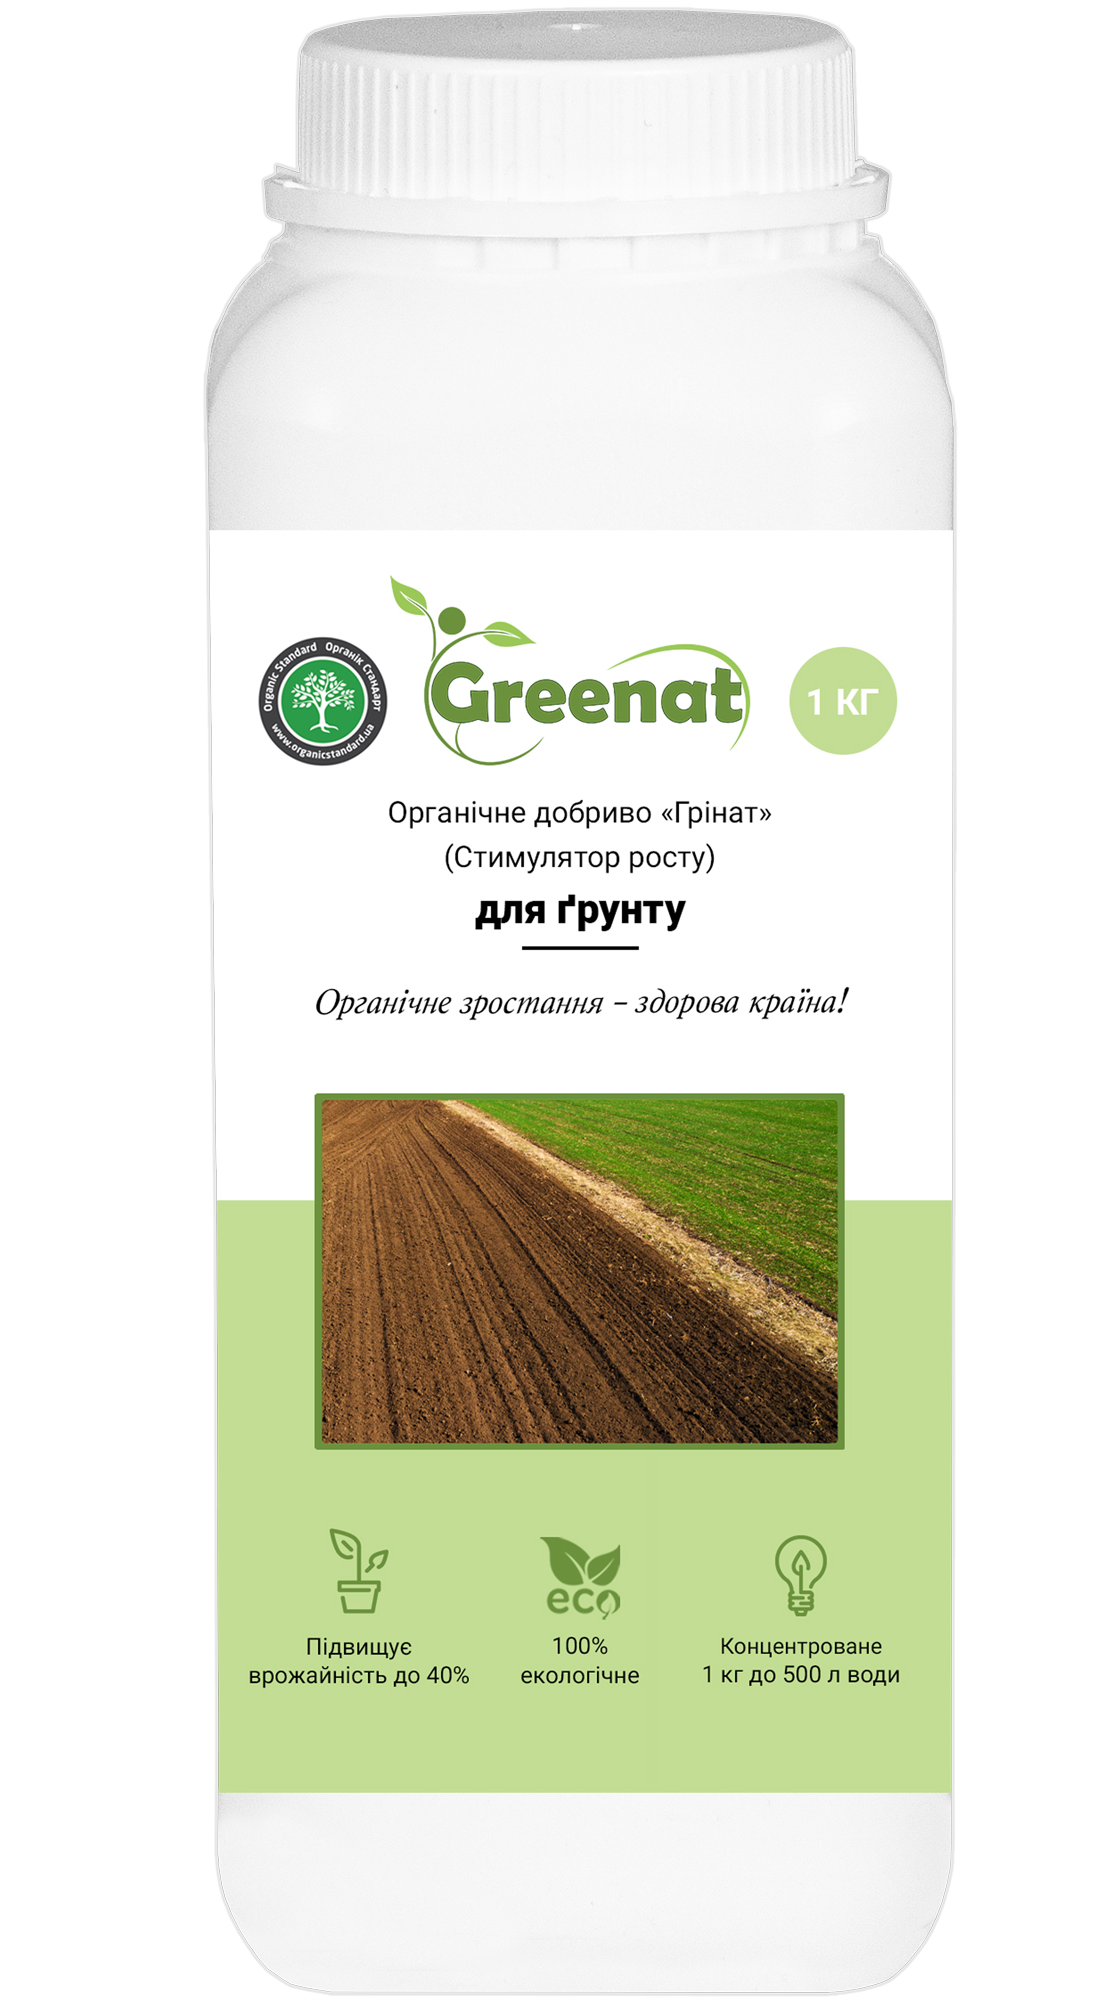 Greenat for plants – Greenat